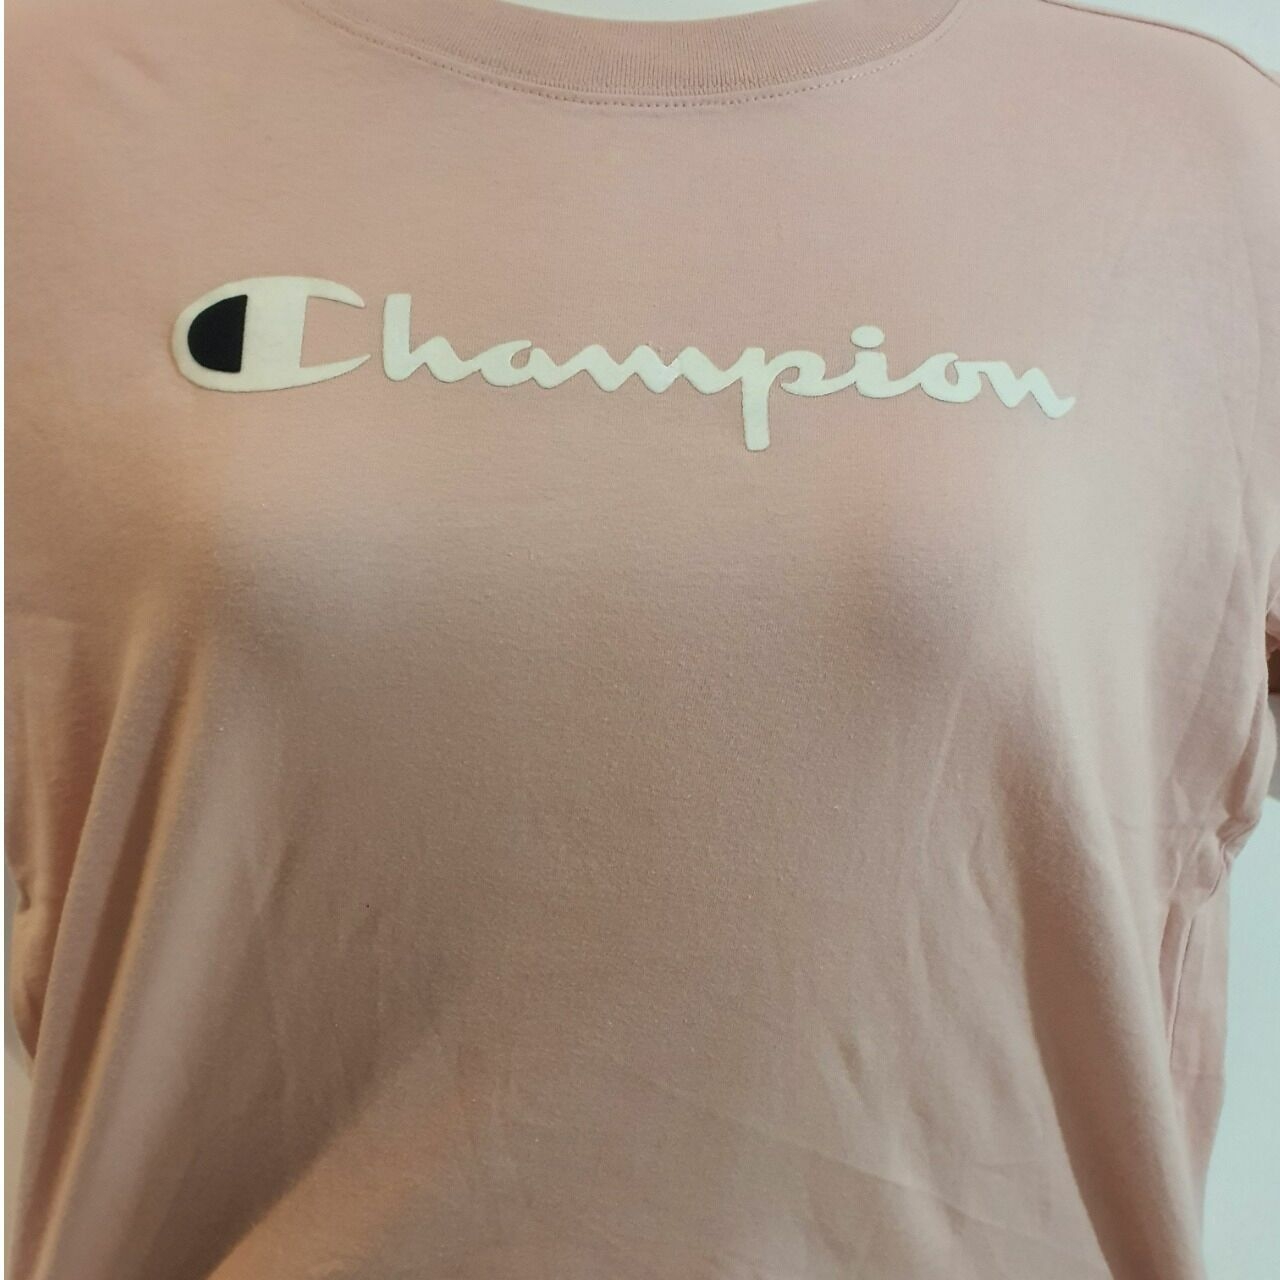 Champion Pink Pastel Kaos